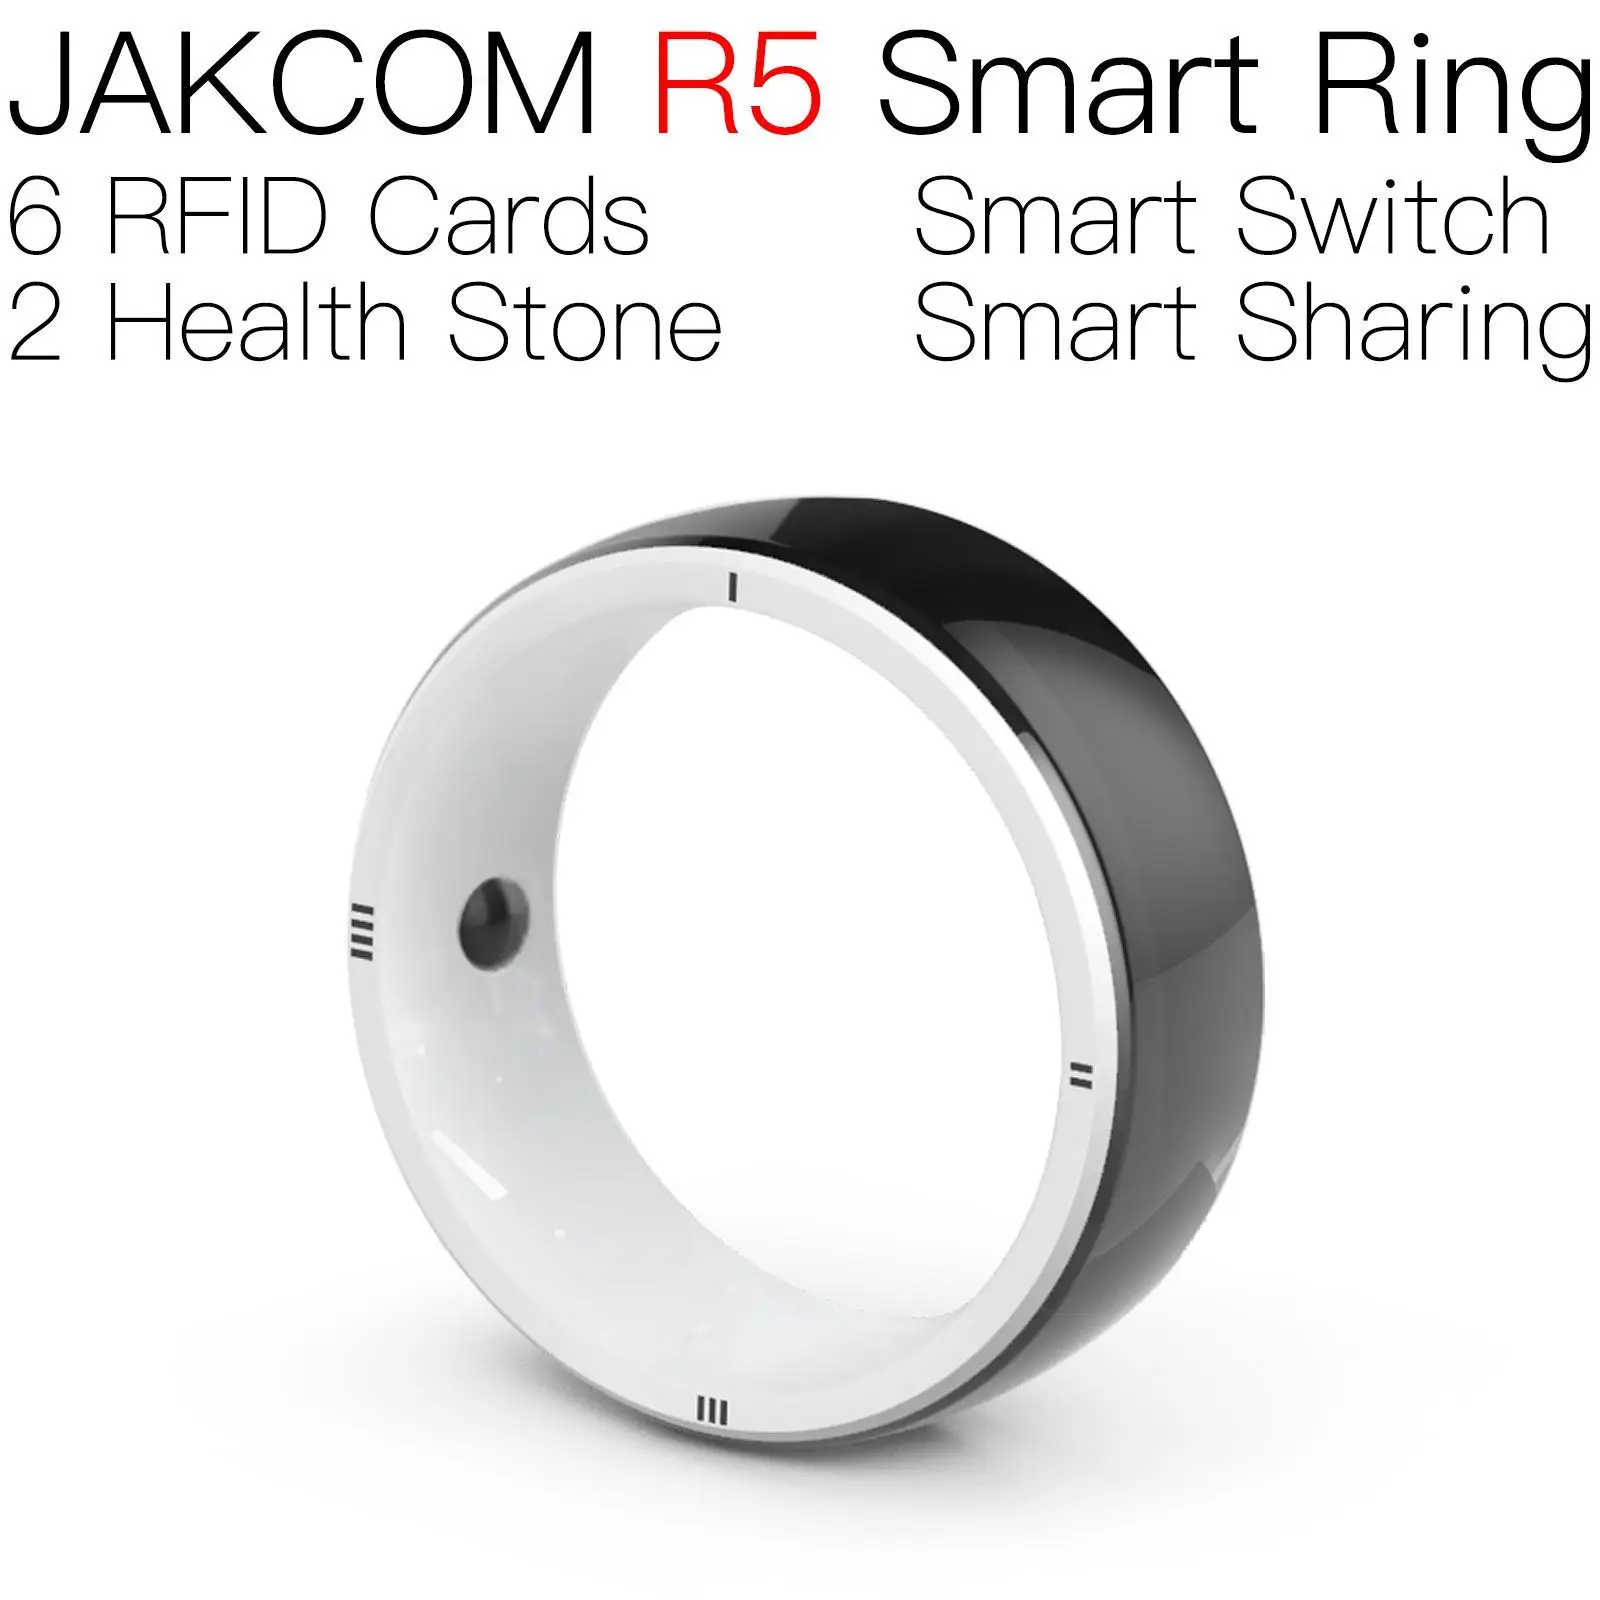 

Умное кольцо JAKCOM R5, новый продукт, как переключатель, раньше, наклейка, умный Браслет jawa для мотоцикла, бытовой электроники